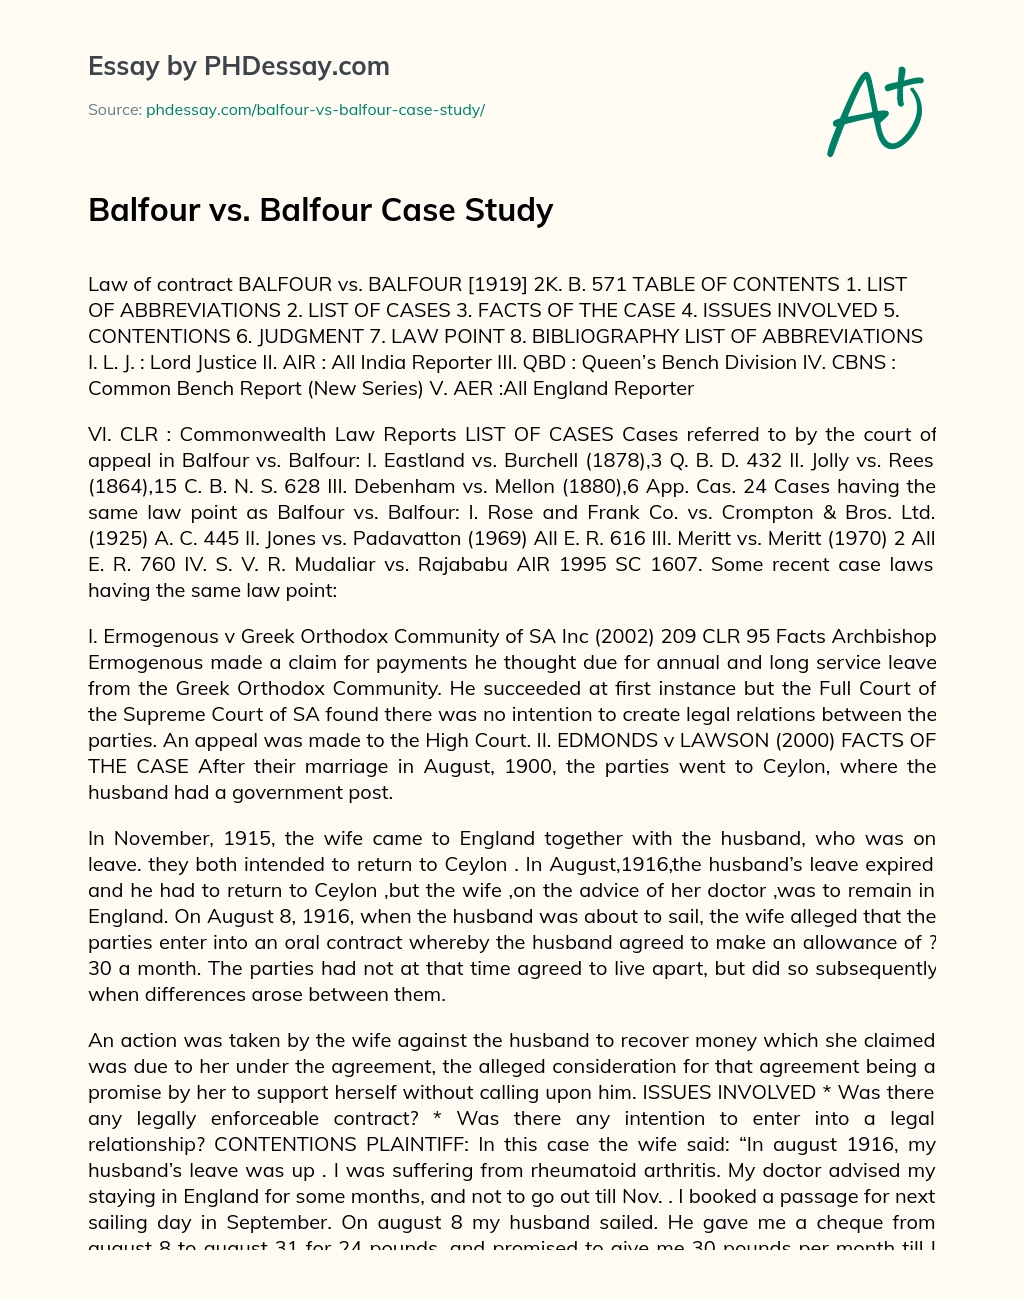 Balfour vs. Balfour Case Study essay